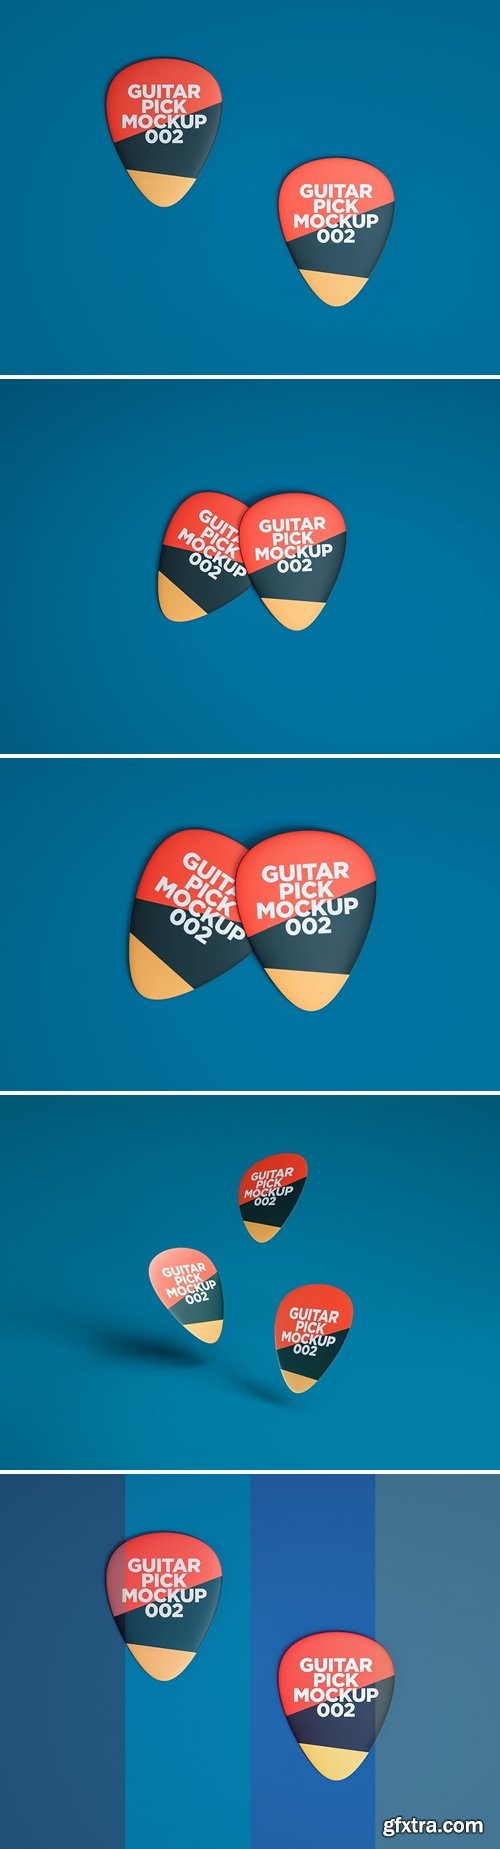 Guitar Pick Mockup 002